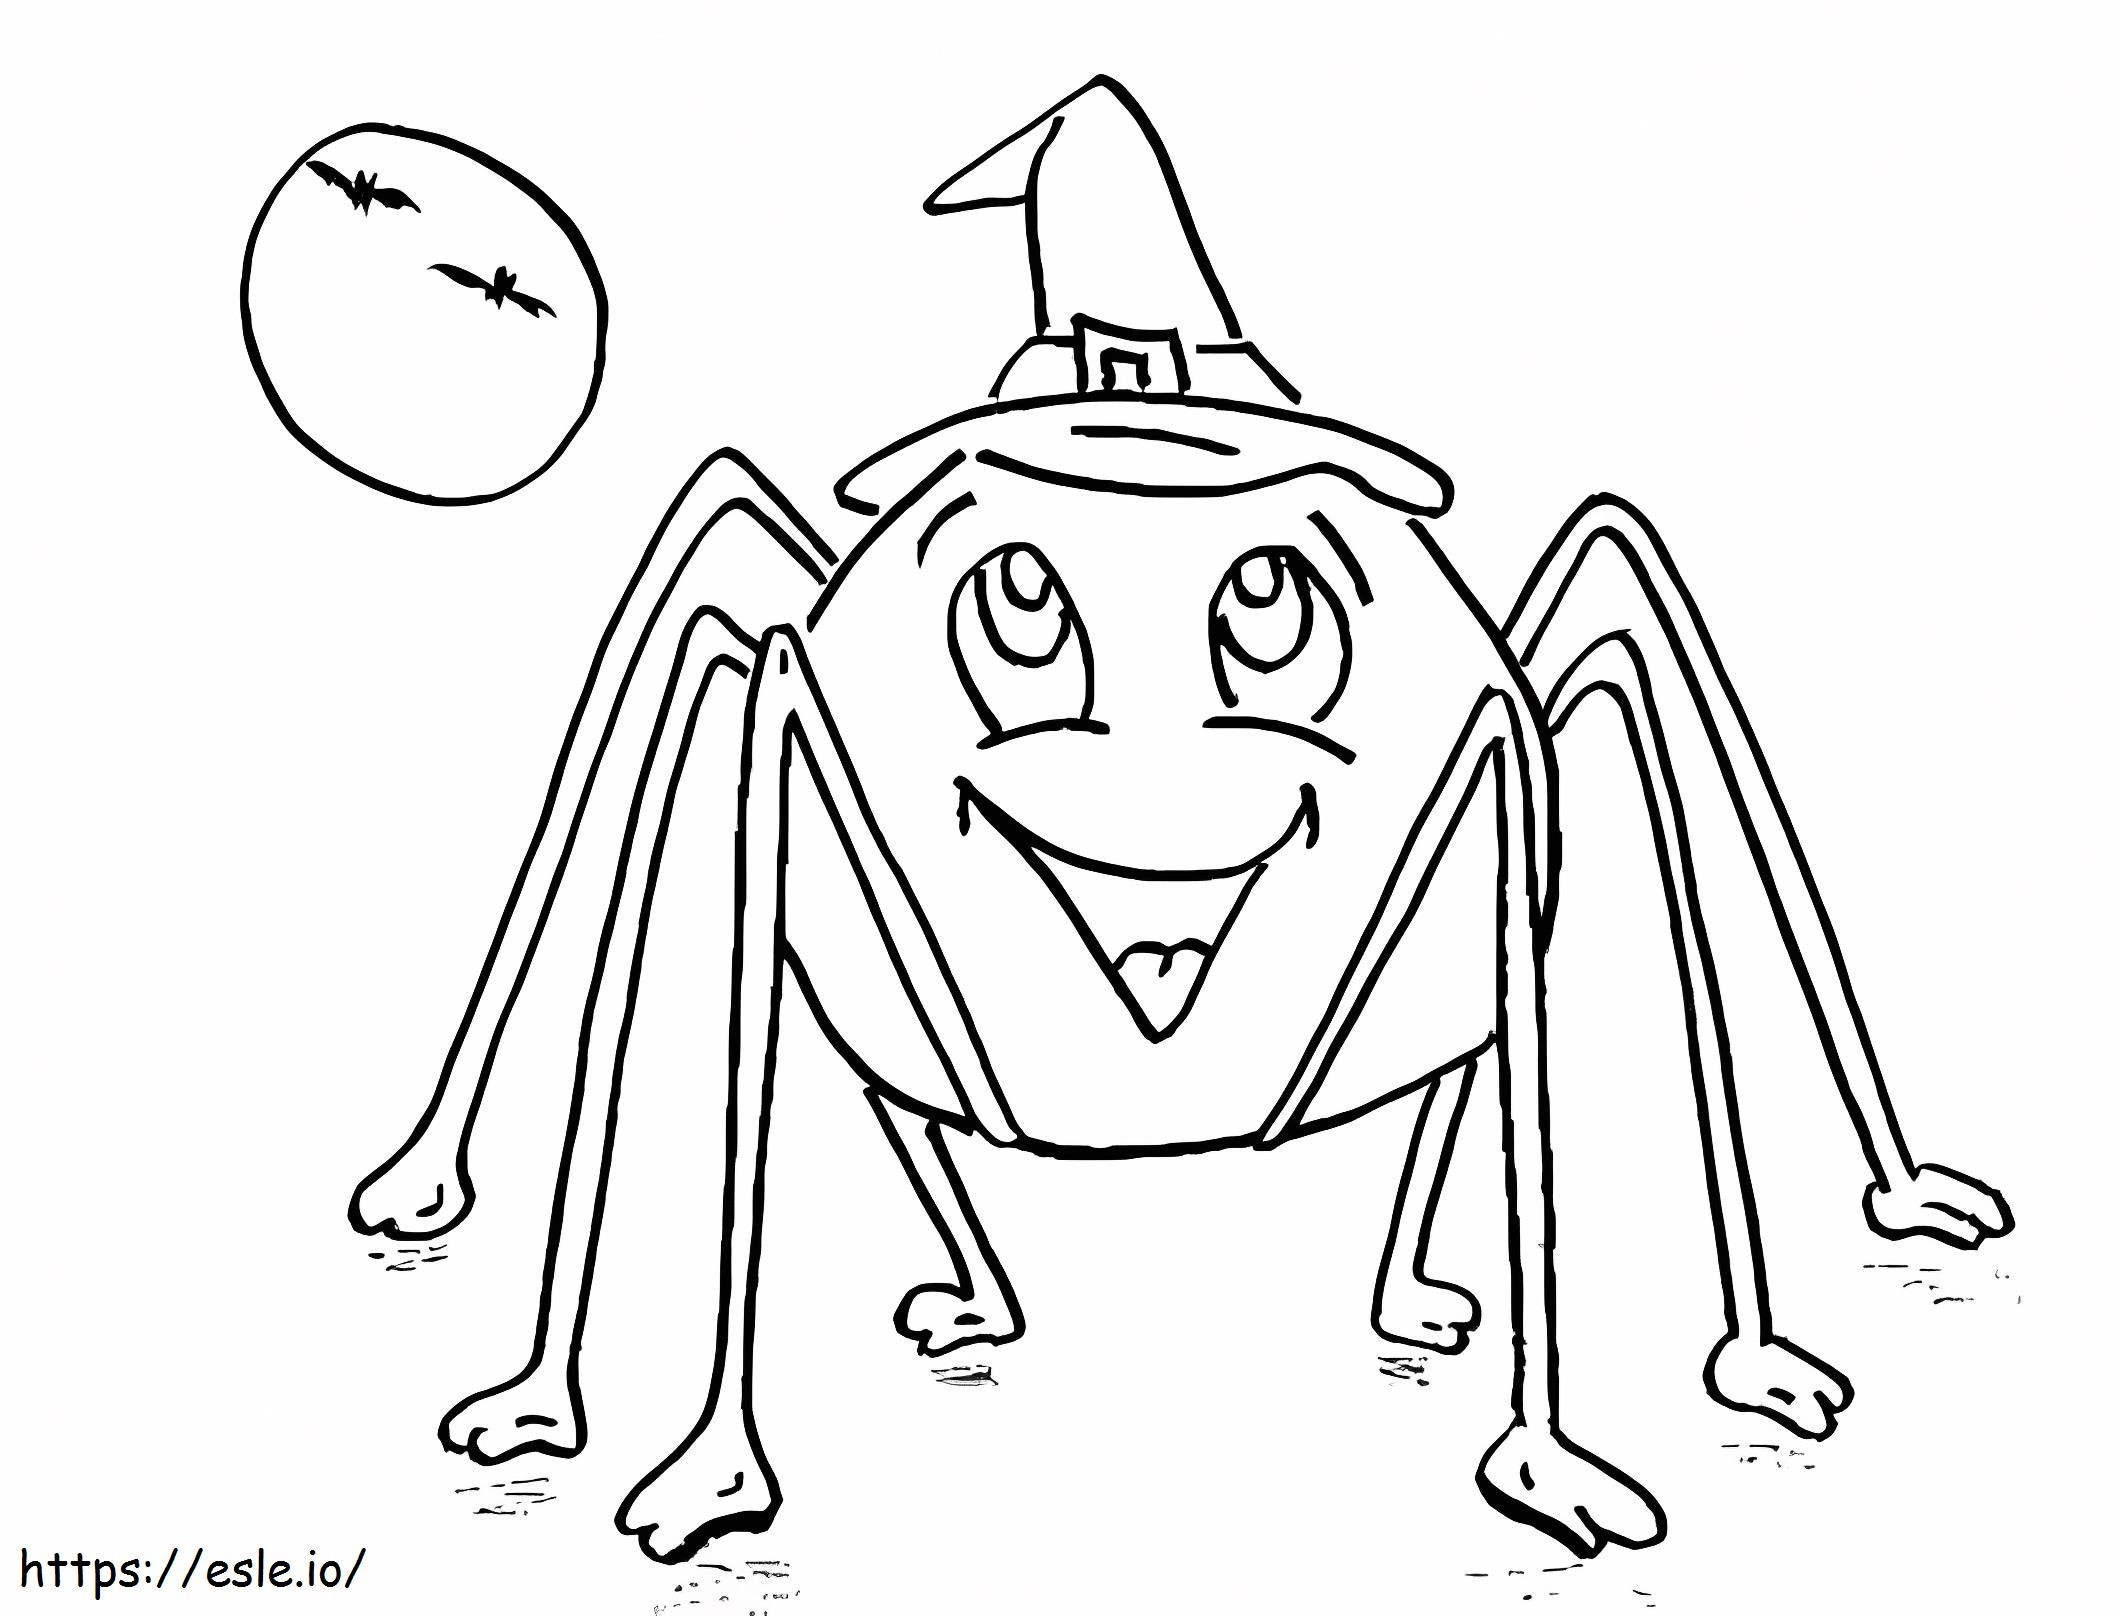 Halloween pók kifestő